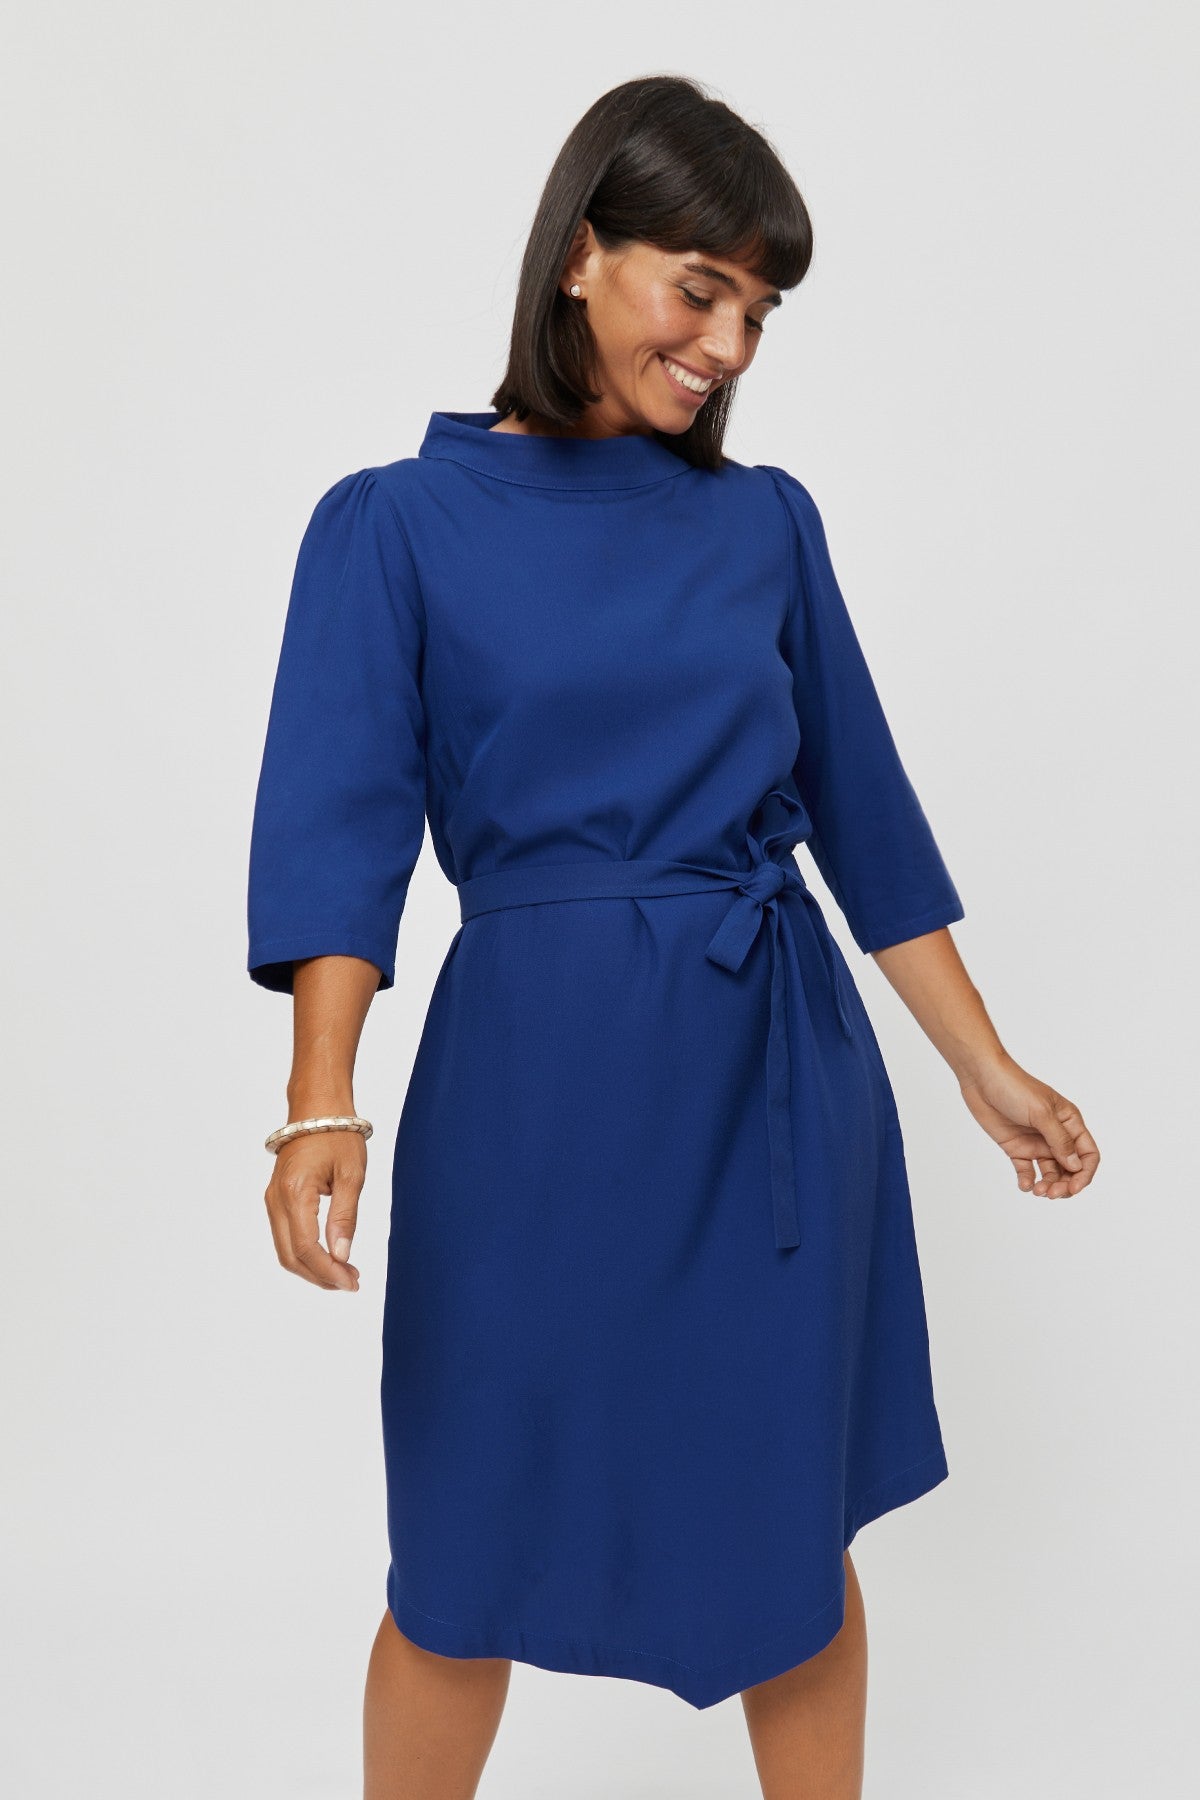 Elegant Midi Dress SUZI, Formal A Line Dress in Blue - AYANI